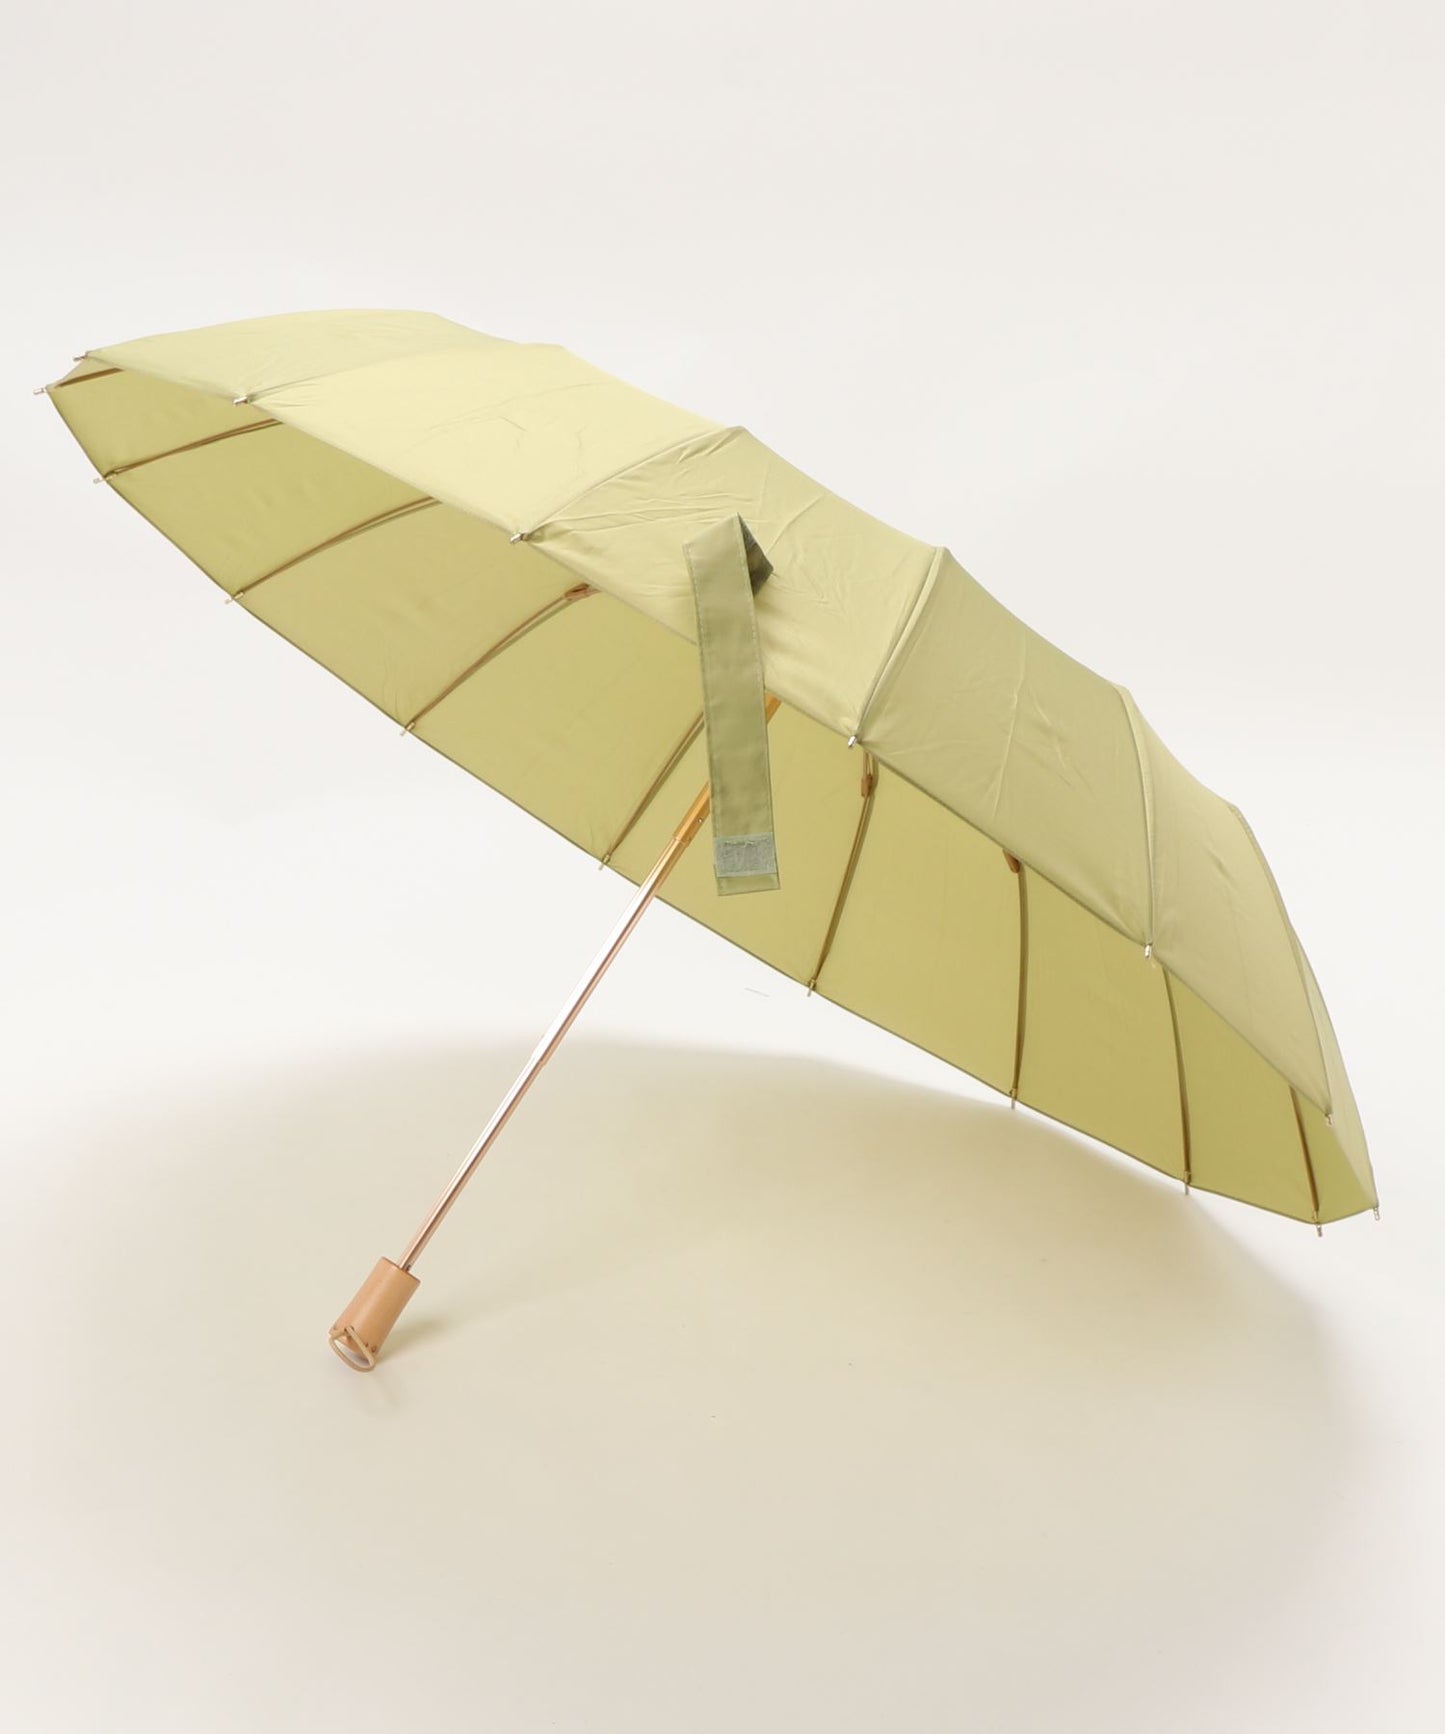 ハンドメイド 木製持ち手 珍しい16本骨 軽量 折りたたみ傘